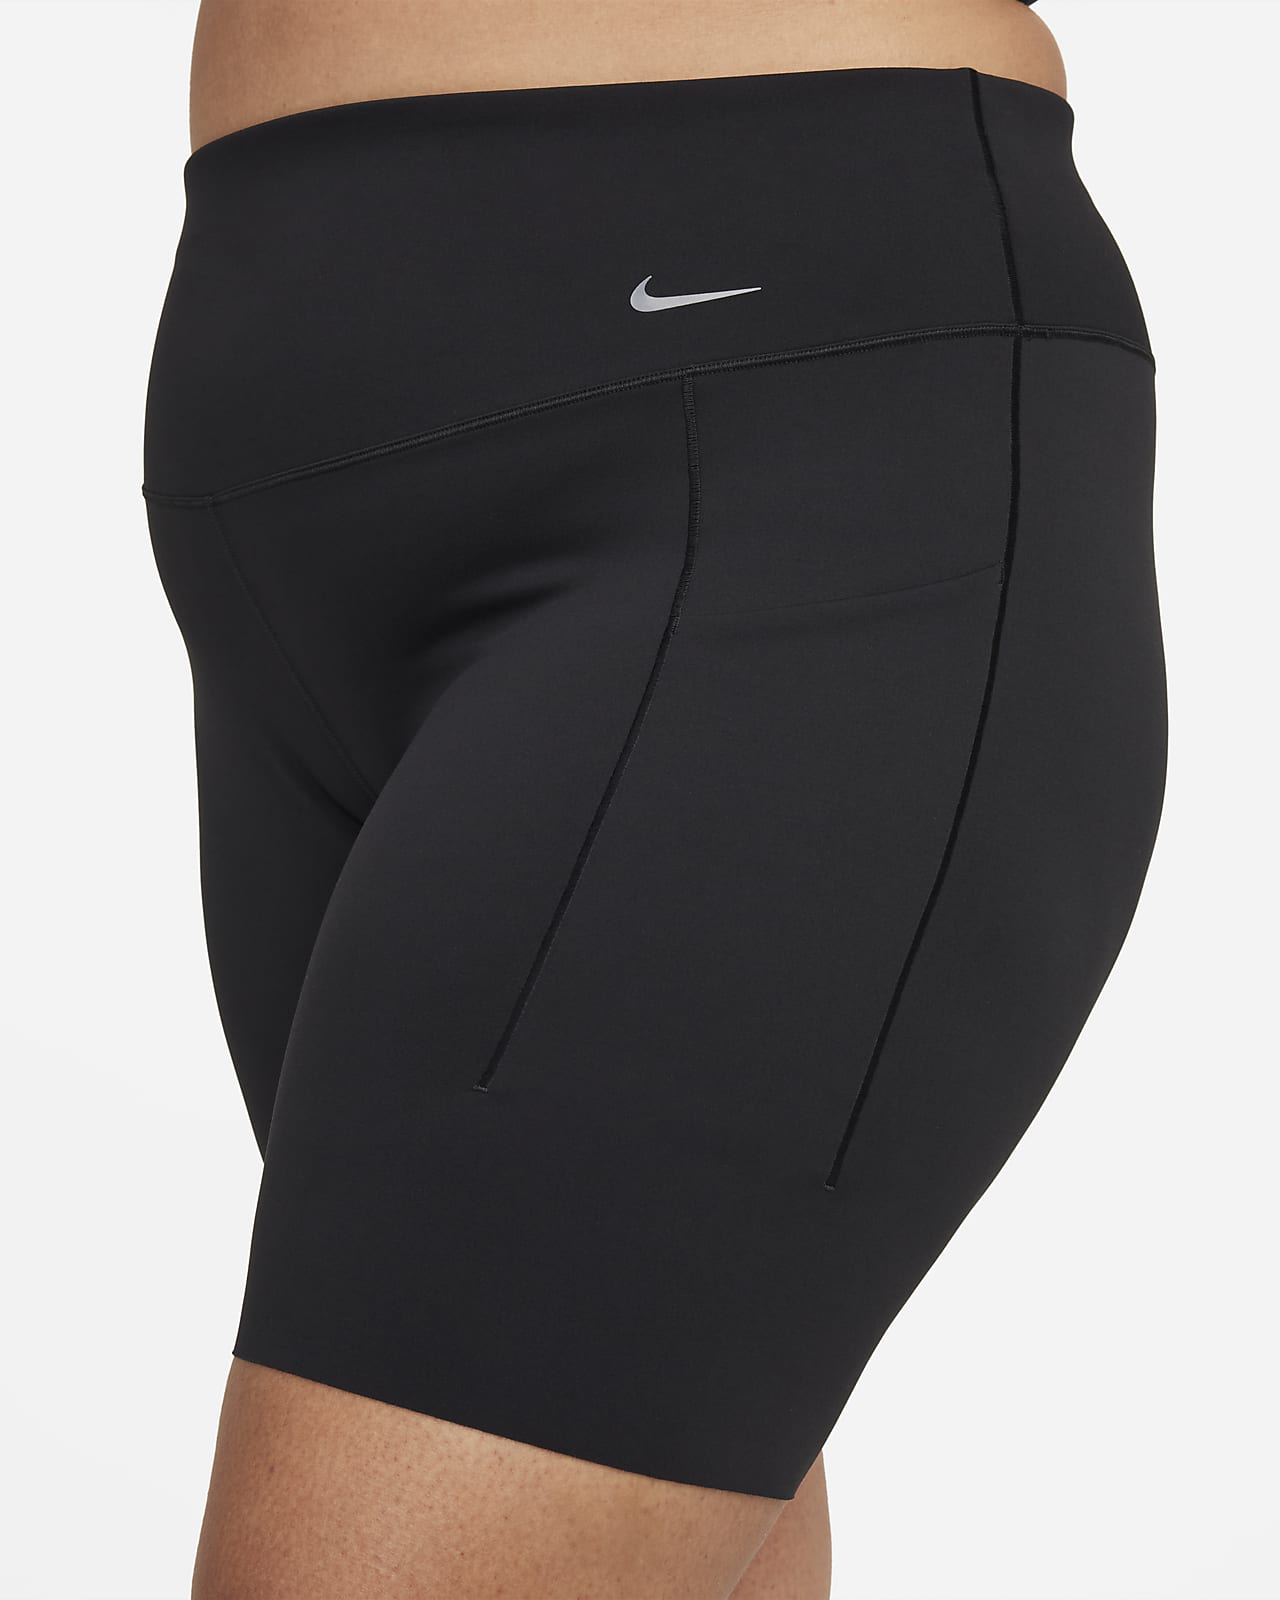 Women's Medium-Support High-Waisted 8 Biker Shorts with Pockets